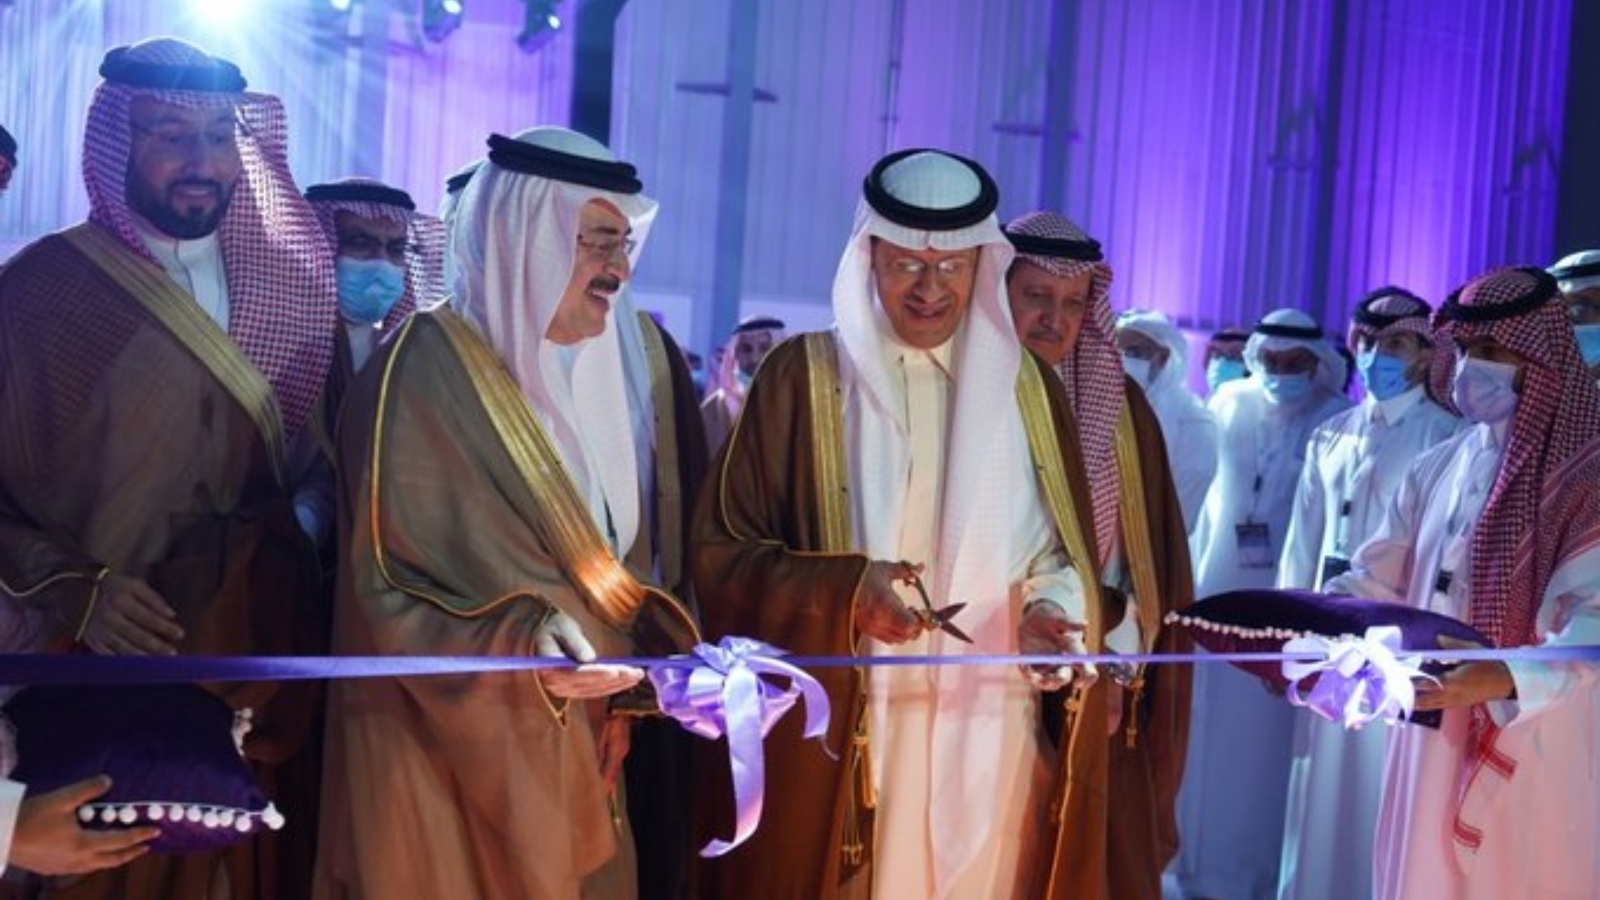 الأمير عبد العزيز بن سلمان، وزير الطاقة السعودي، في مراسم افتتاح أول مركز متكامل لخدمة قطاع الطاقة بالشرق الأوسط في مدينة الدمام، شرق السعودية. بتاريخ 7 تشرين الأول/ أكتوبر 2021. (عن صفحة شركة سيمنس للطاقة العالمية في تويتر)